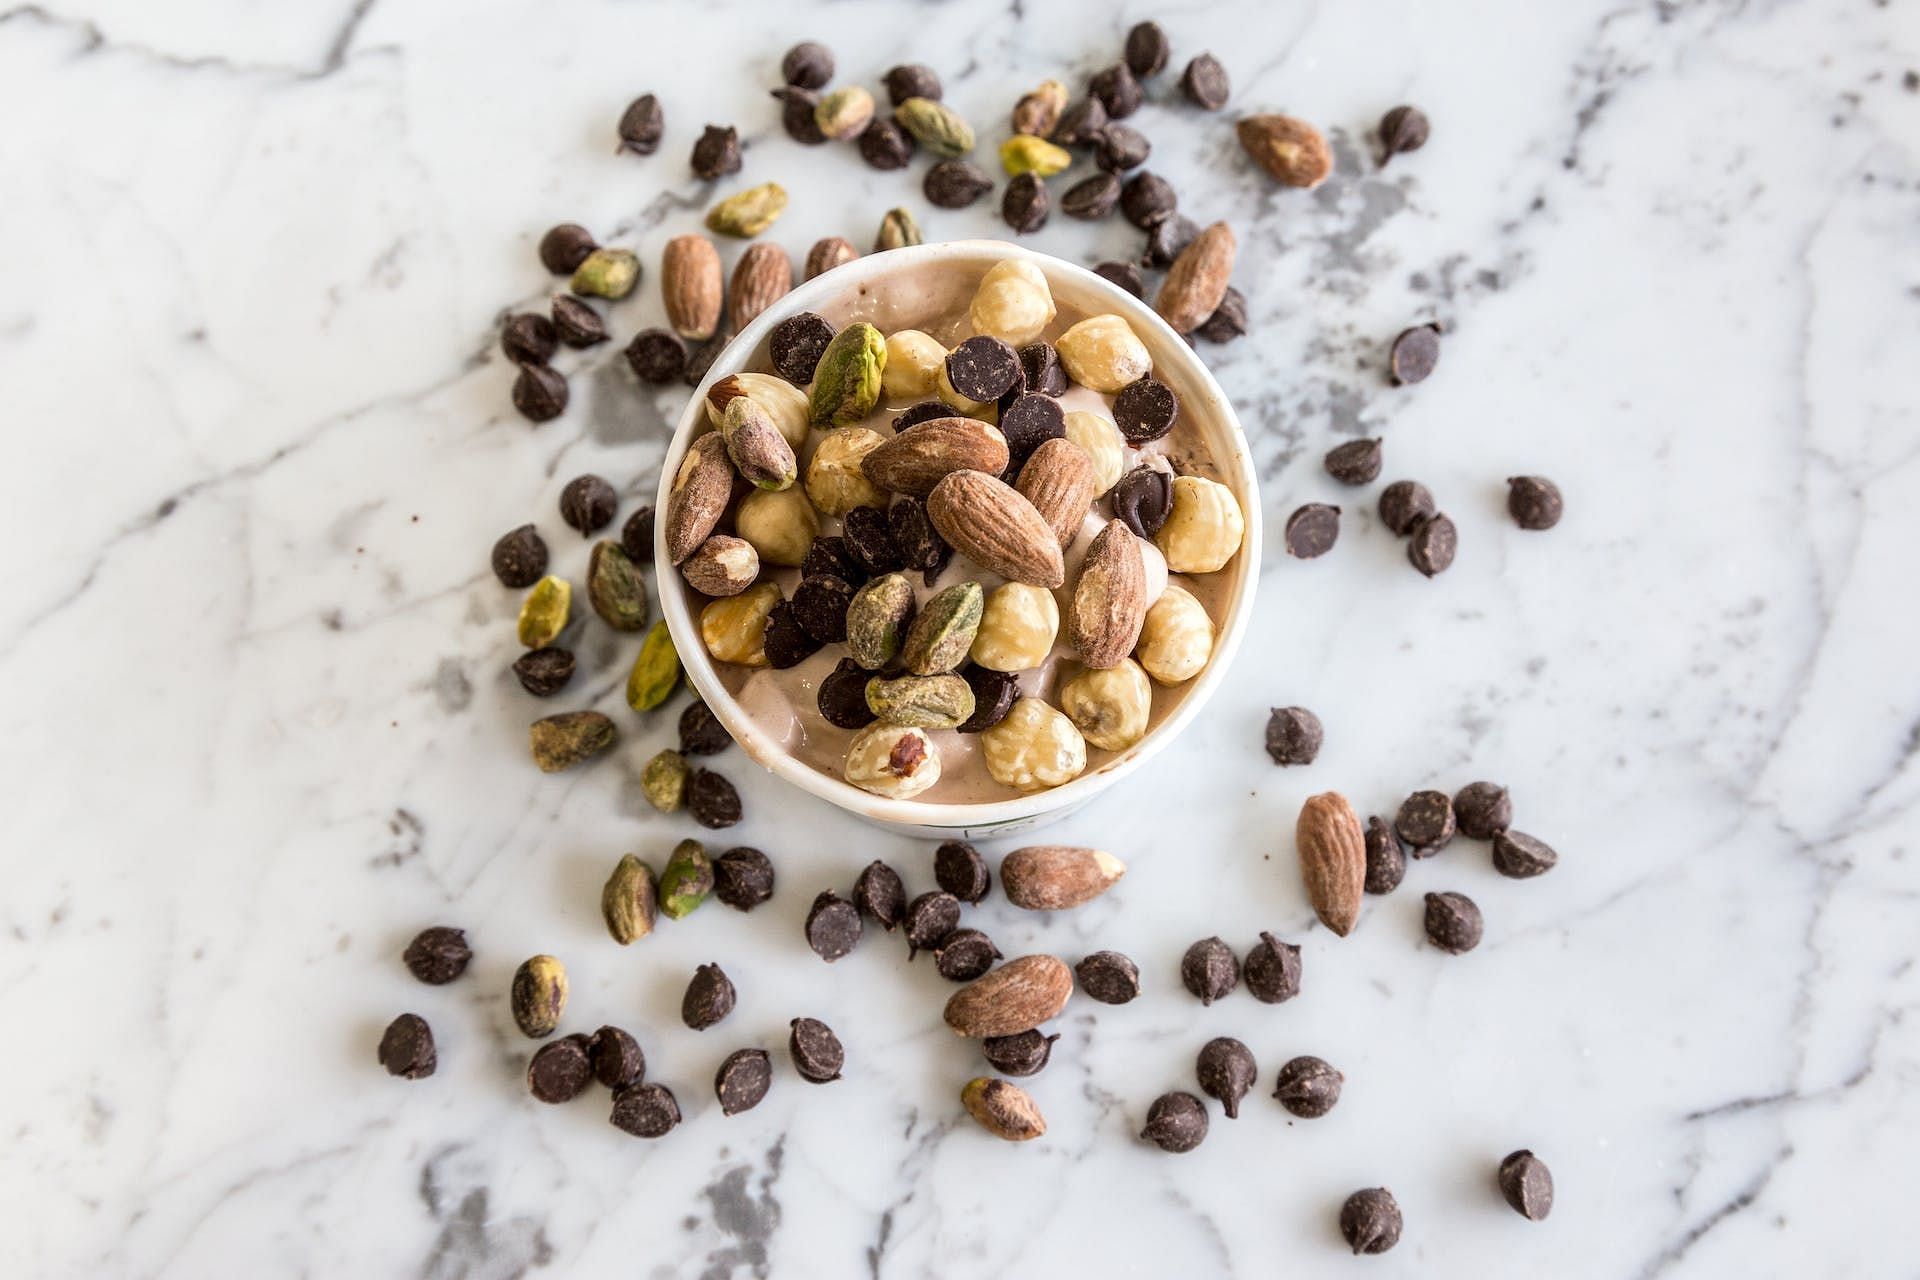 Consuming nuts can improve mood. (Image via Pexels/David Disponett)